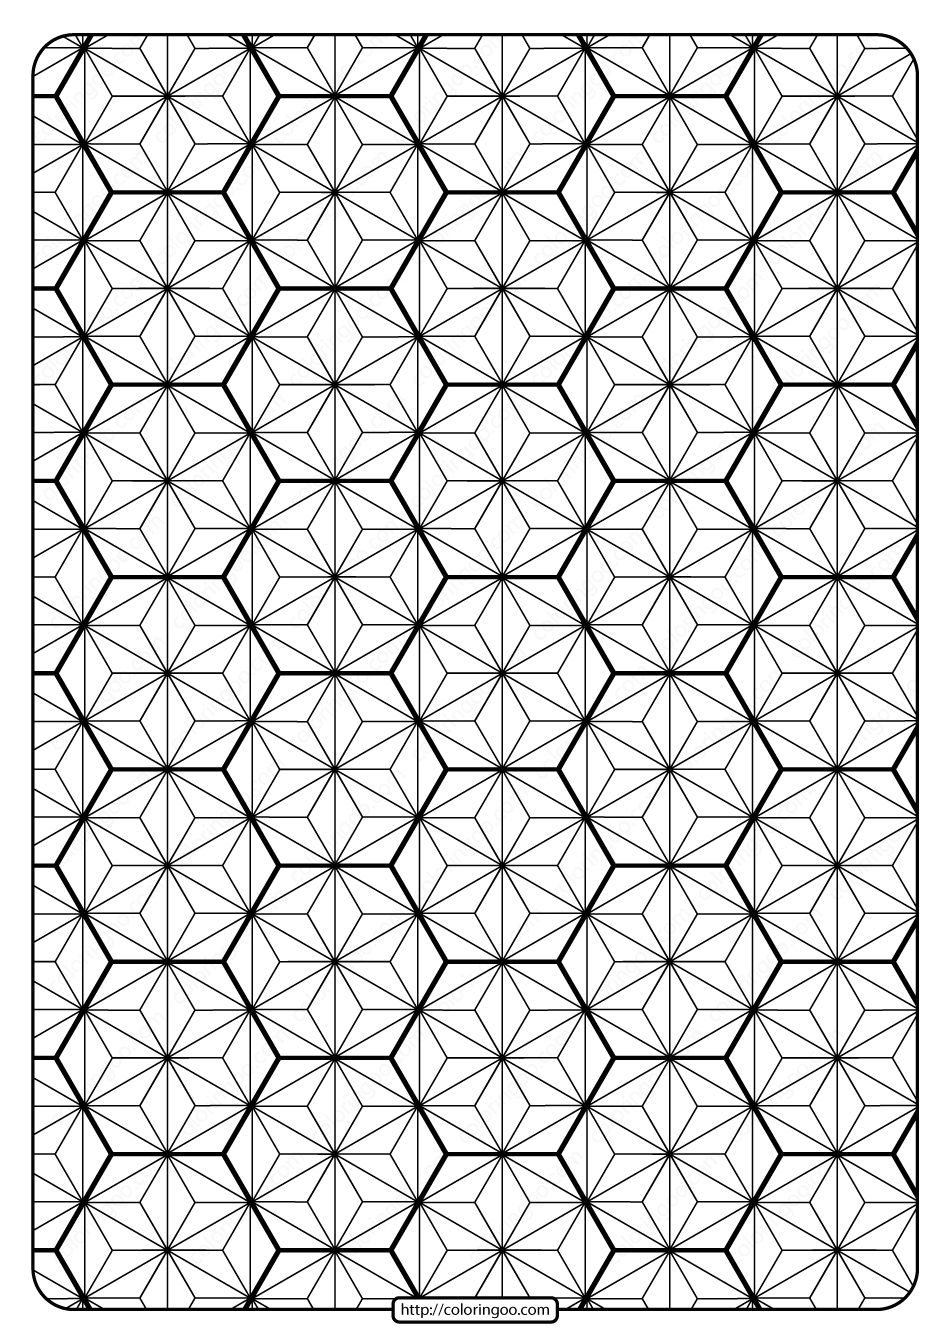 Printable geometric pattern pdf coloring page